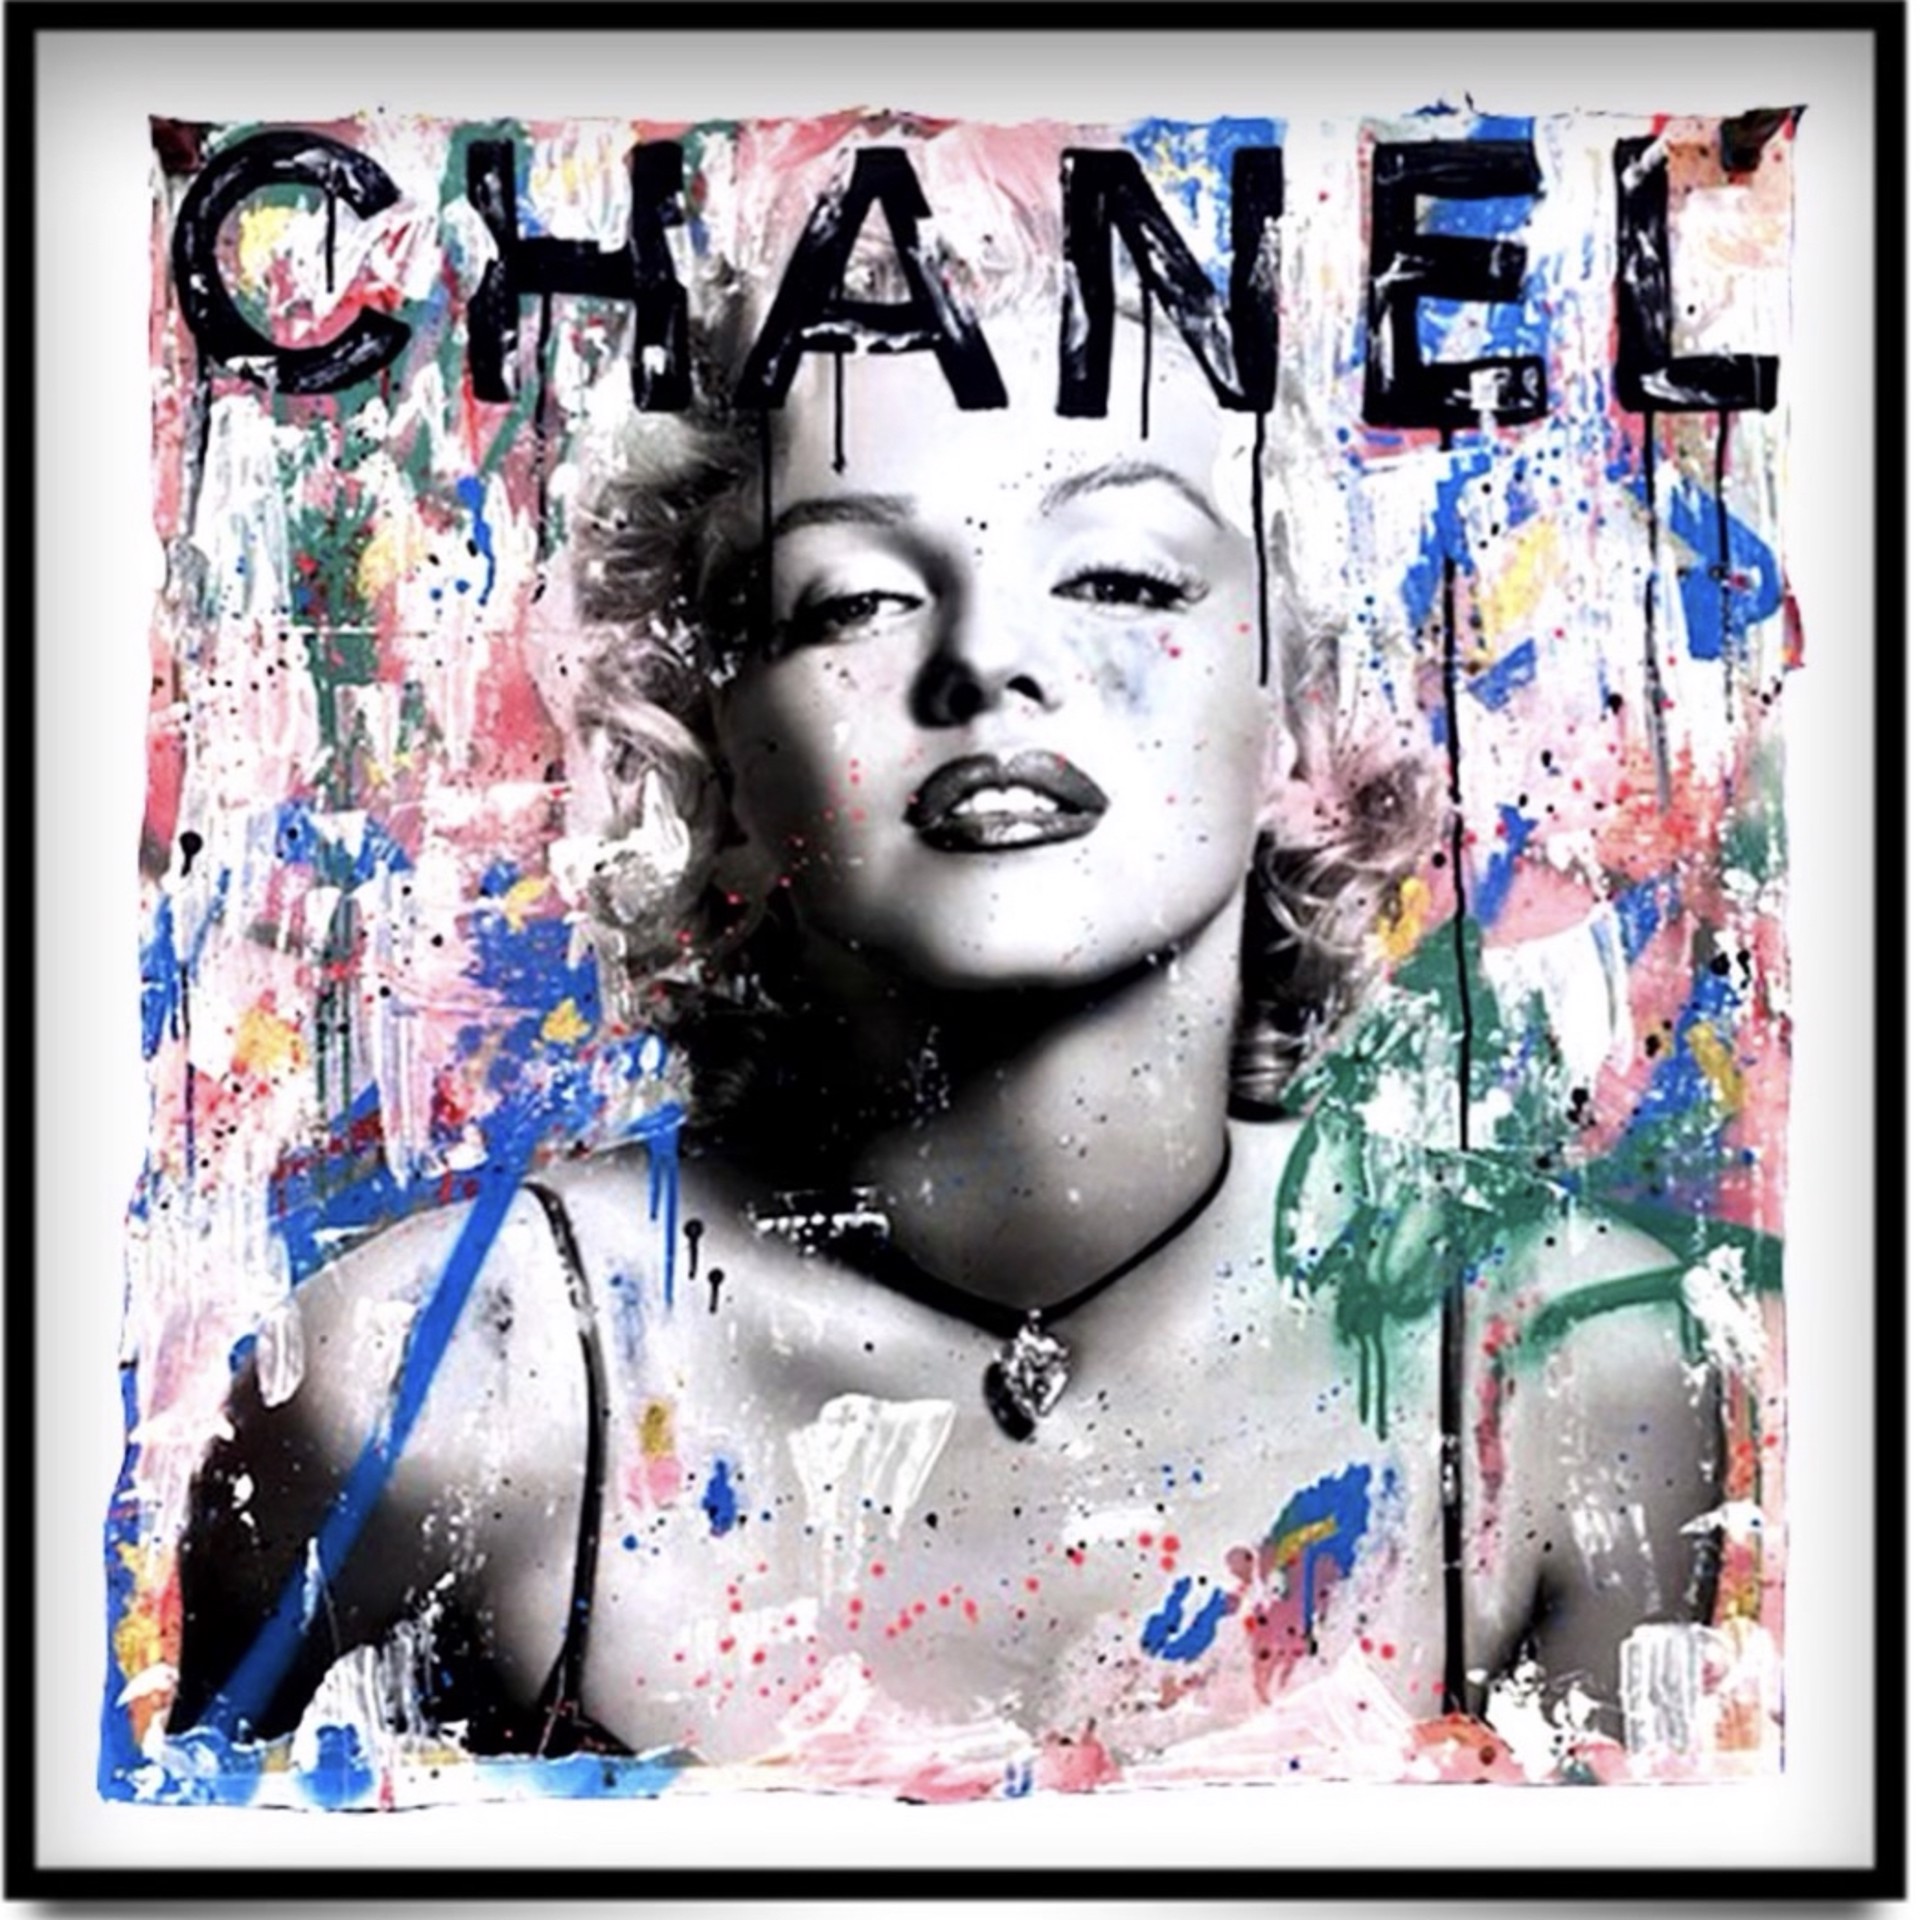 Monroe X Chanel by Seek One